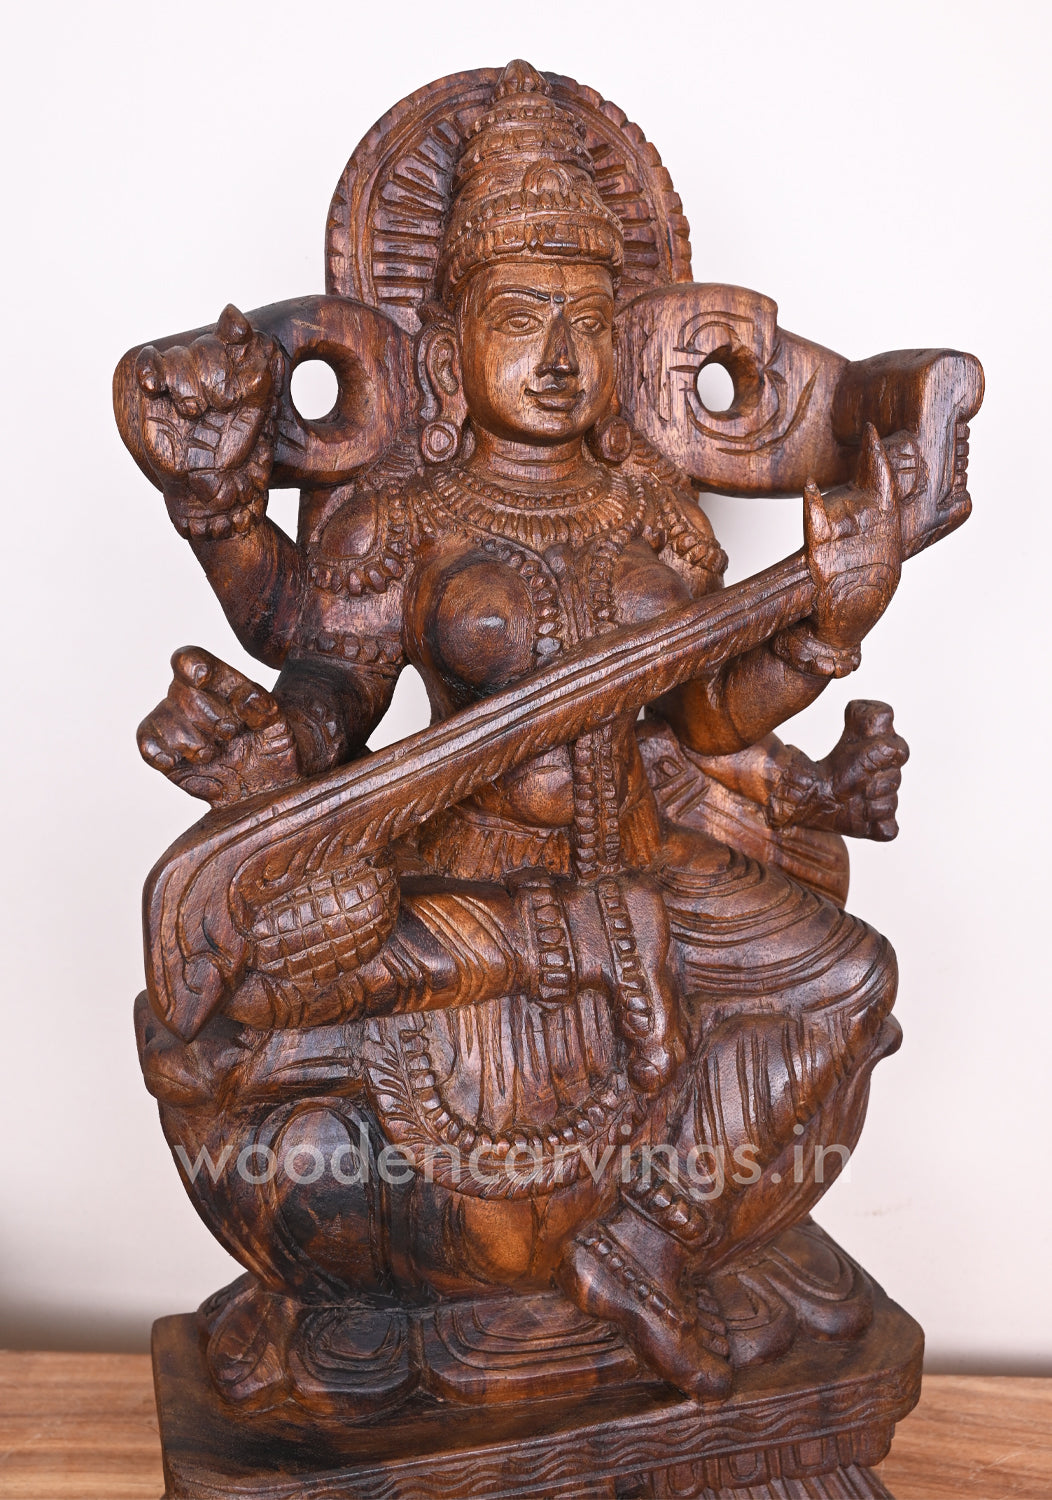 Vaishnava Saraswathi Maa Detaily Handmade With Fine Finishing Wooden Sculpture 24"